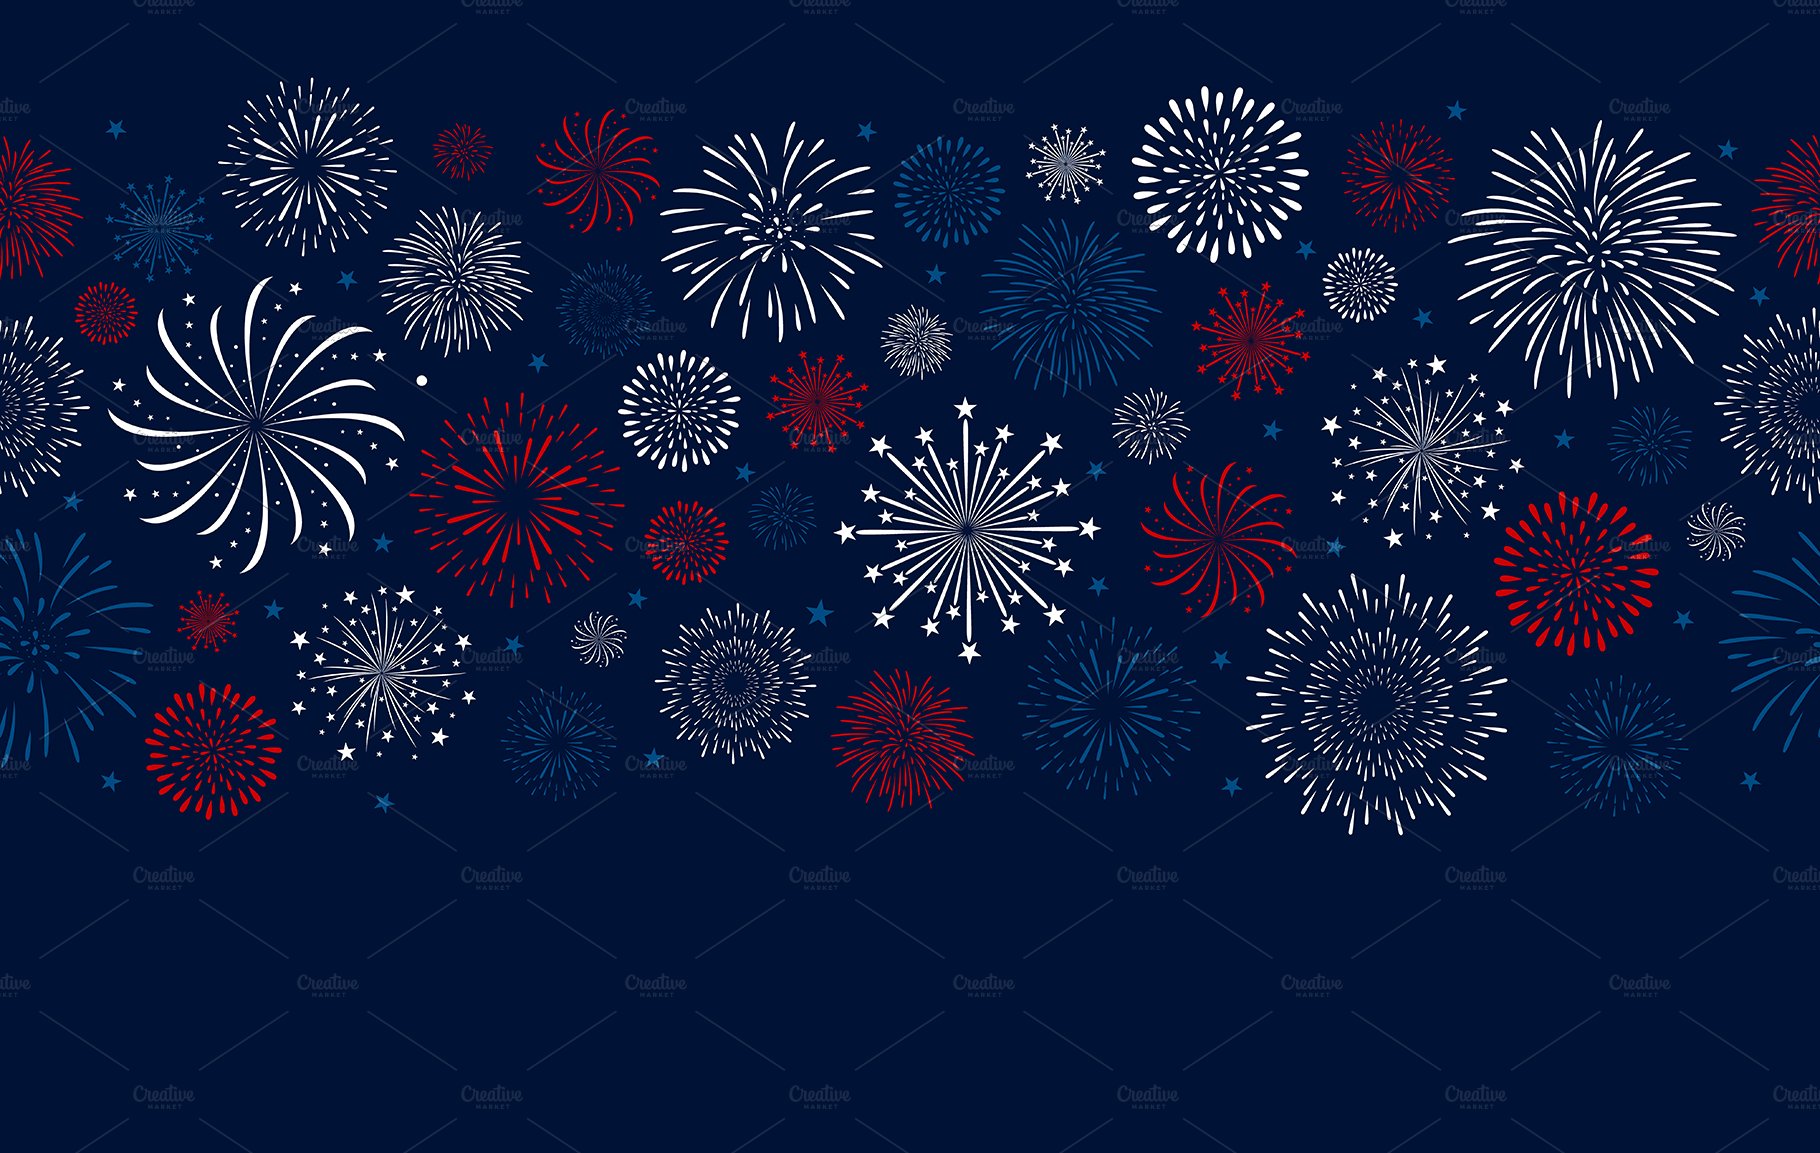 Fireworks design on blue background cover image.